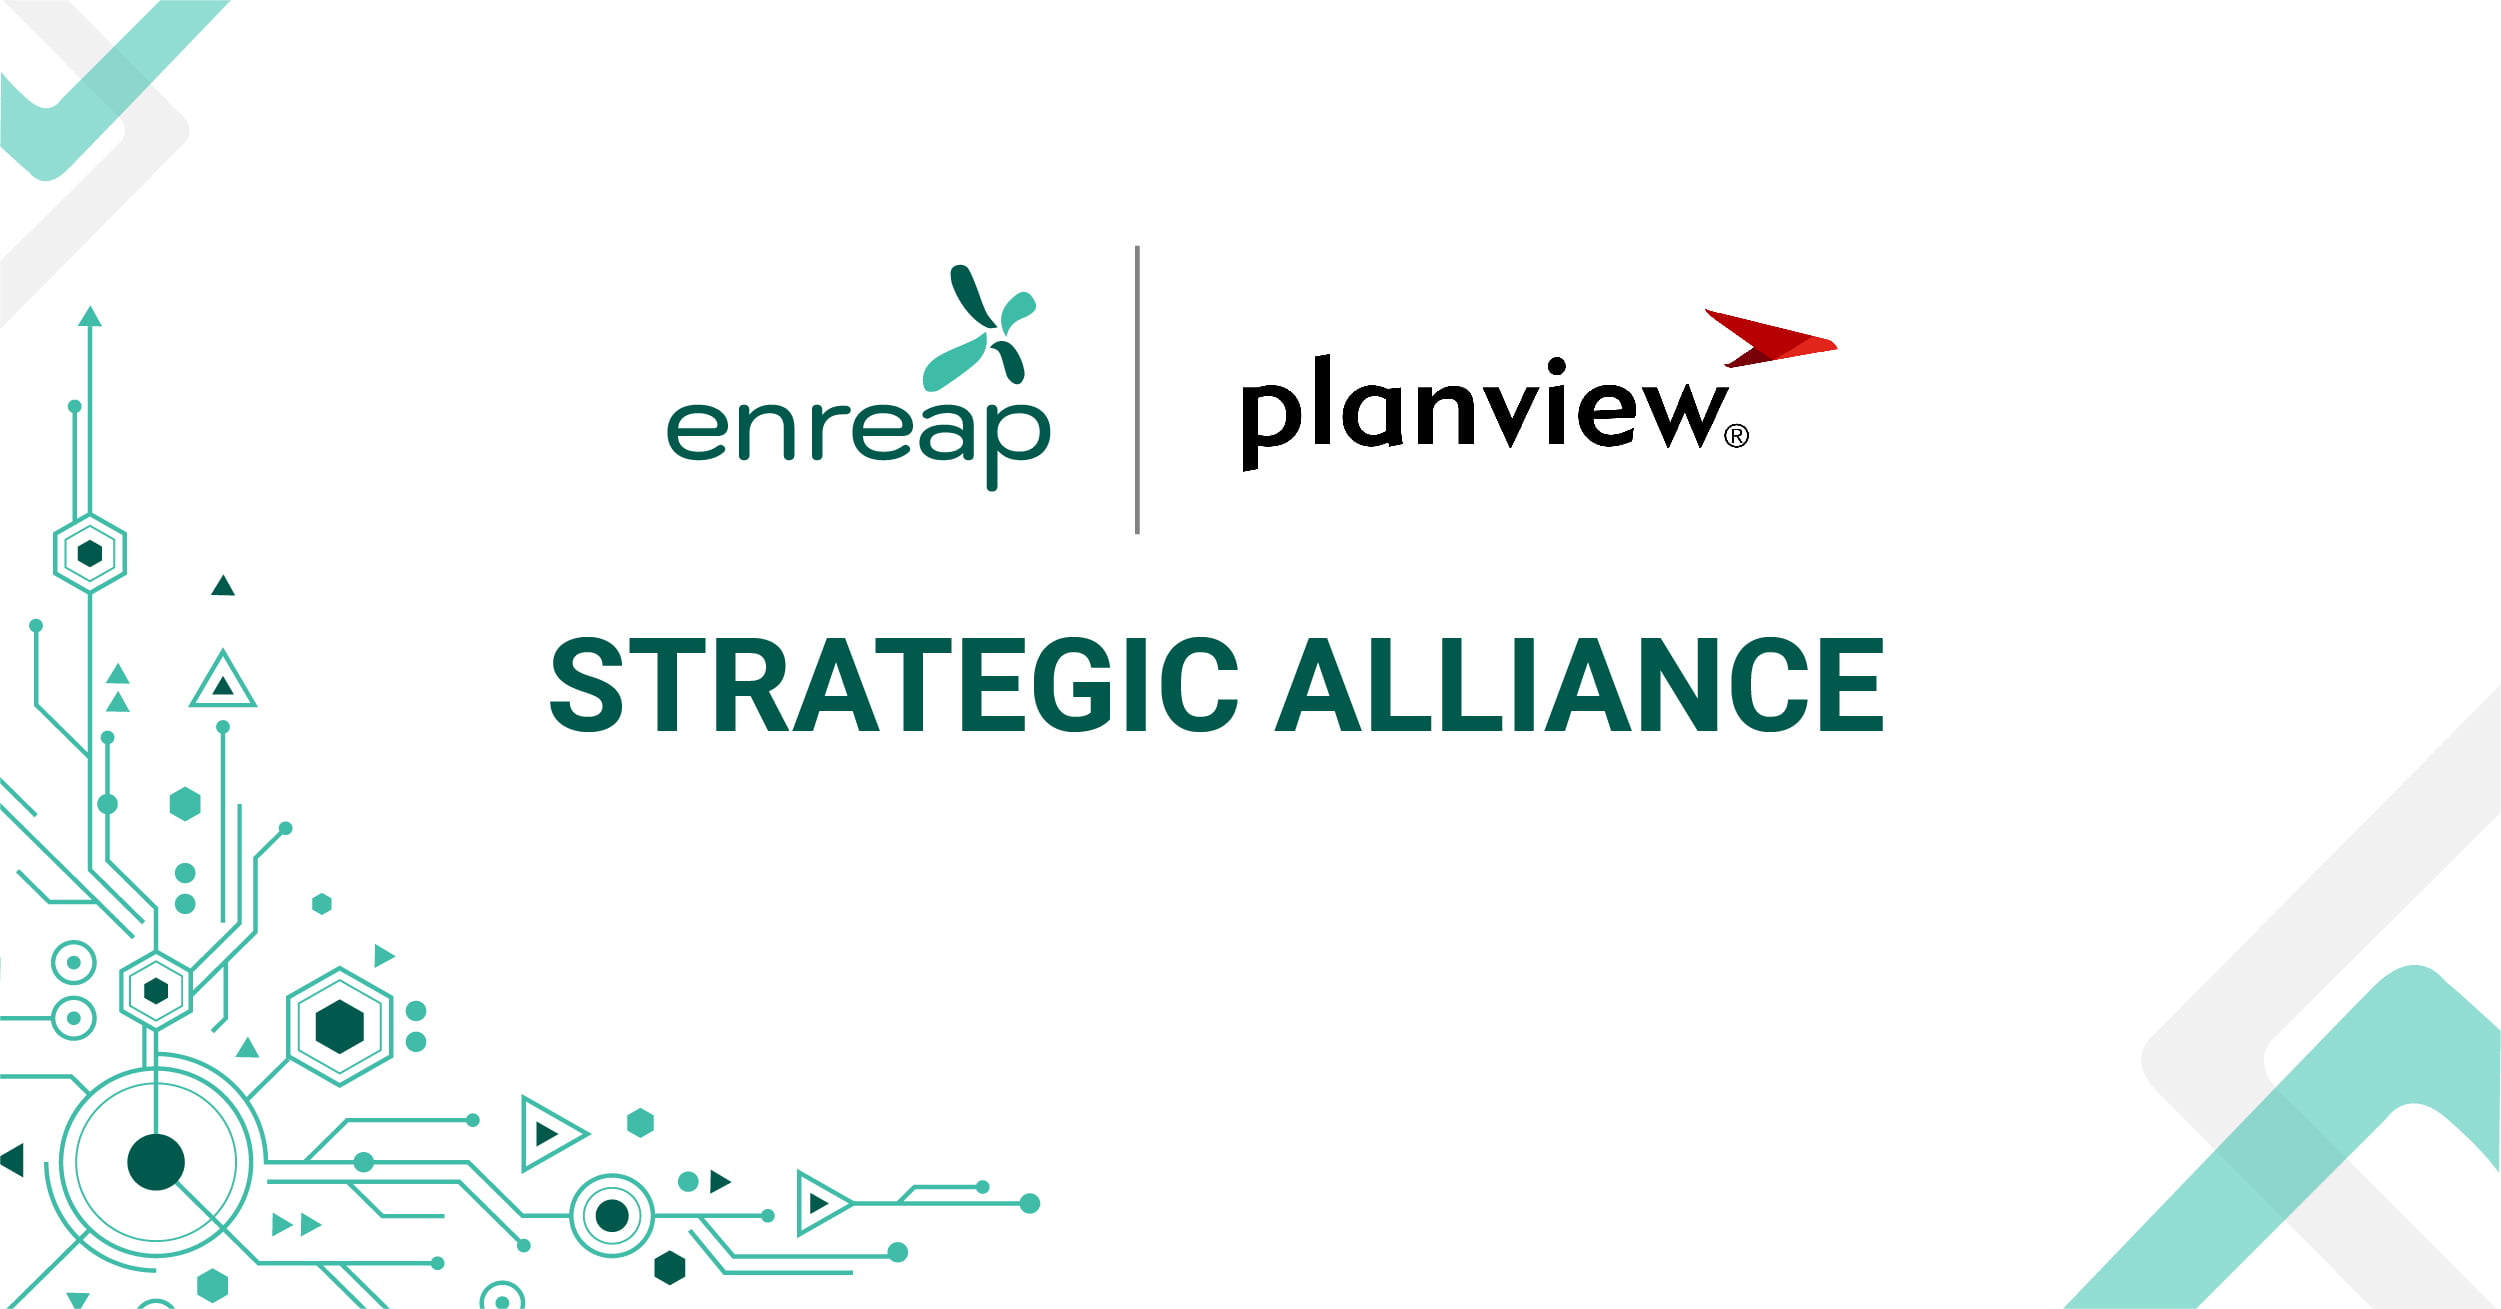 Planview-enreap_Partnership_PR_Image_8 Dec 2022